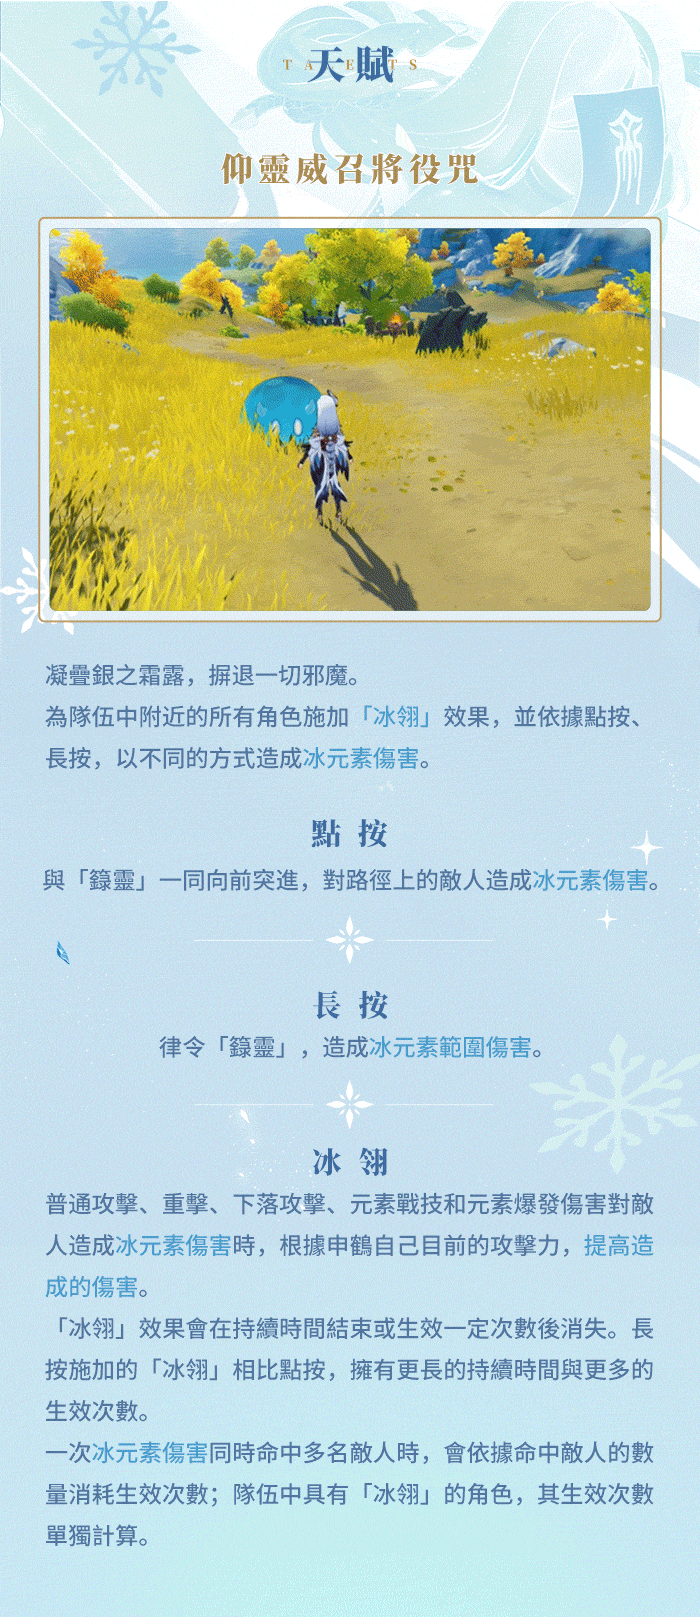 【TpGS 22】《原神》宣布參展 2022 台北國際電玩展 釋出申鶴角色預告「孤辰新夢」